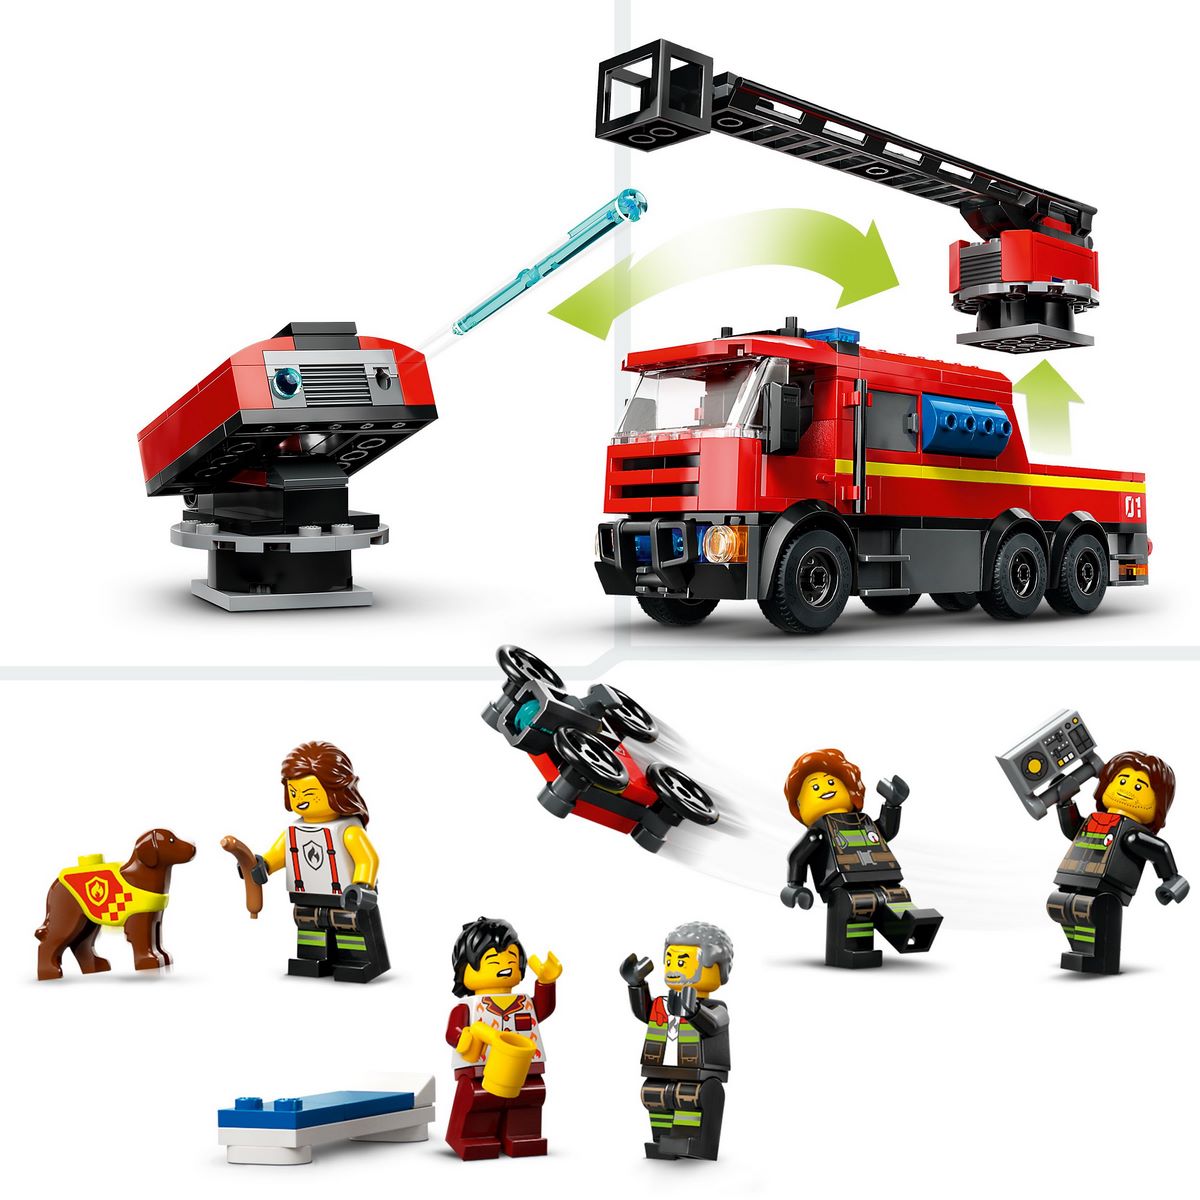 LEGO City 60414 La Caserne et le Camion de Pompiers, Jouet de